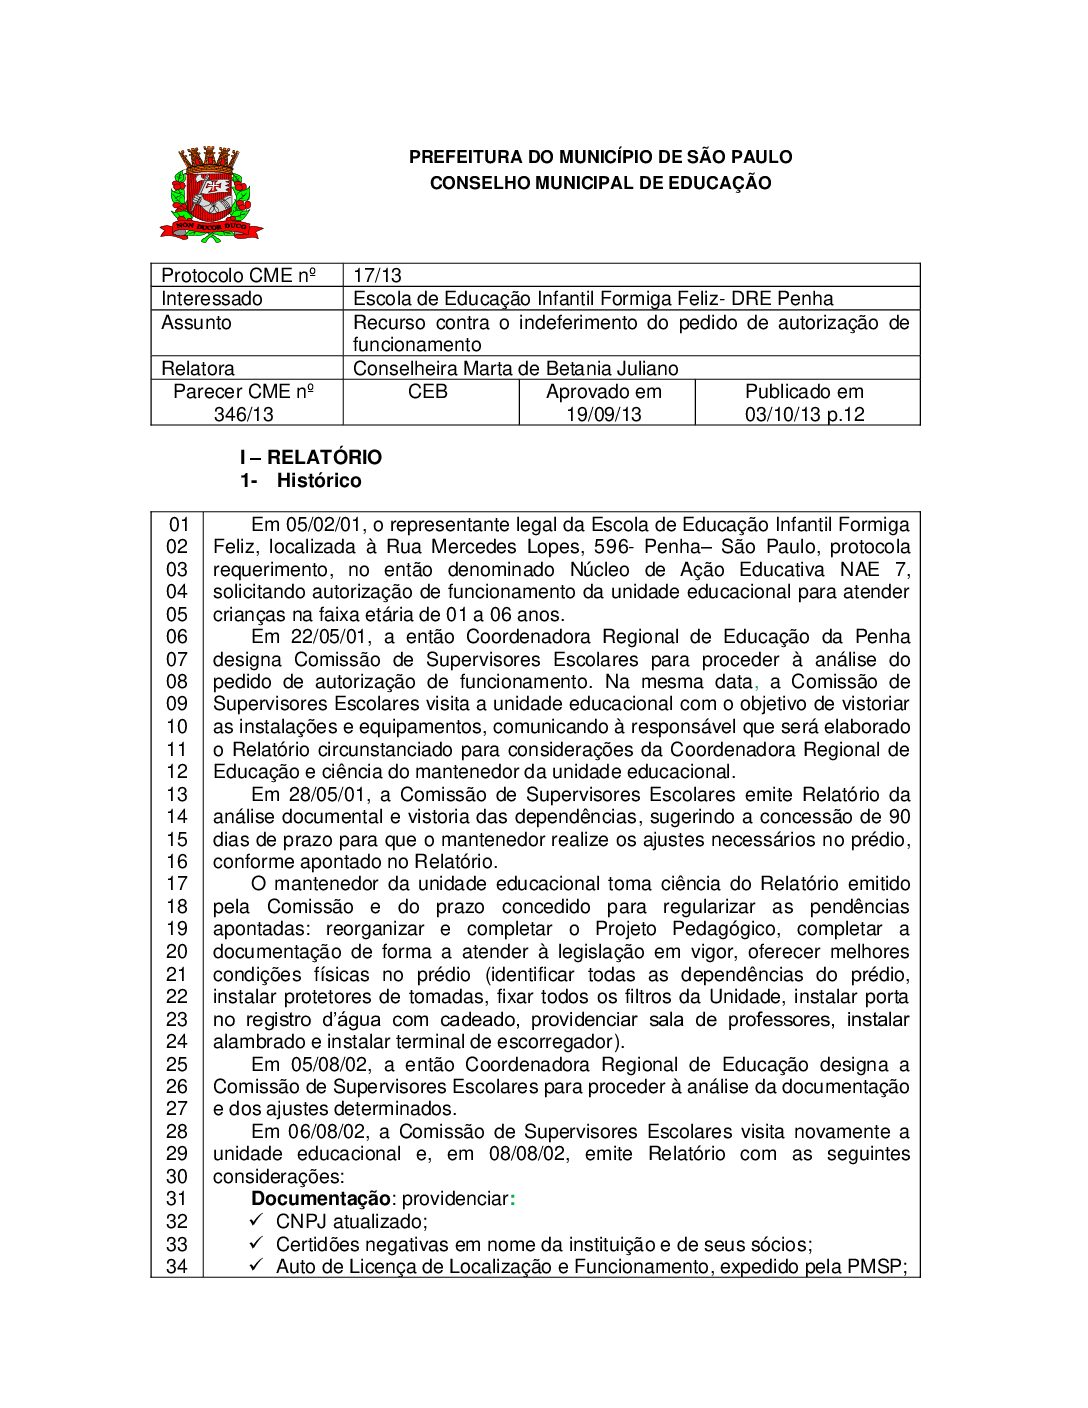 Parecer CME nº 346/2013 - Escola de Educação Infantil Formiga Feliz (DRE Penha) - Recurso contra o indeferimento do pedido de autorização de funcionamento 